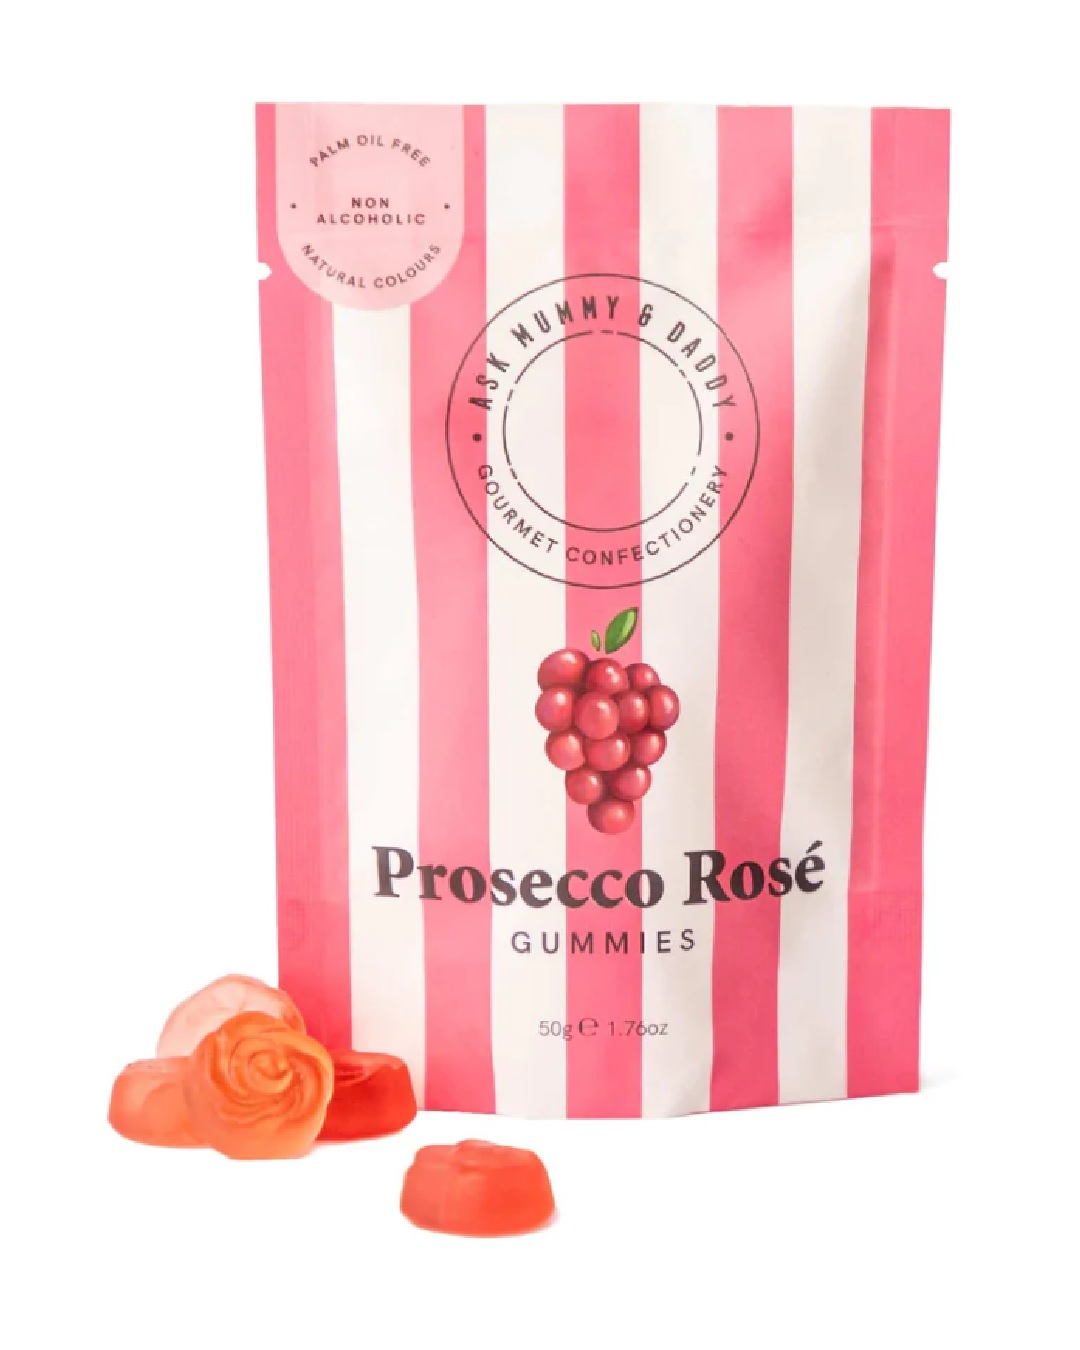 Prosecco rose gummies